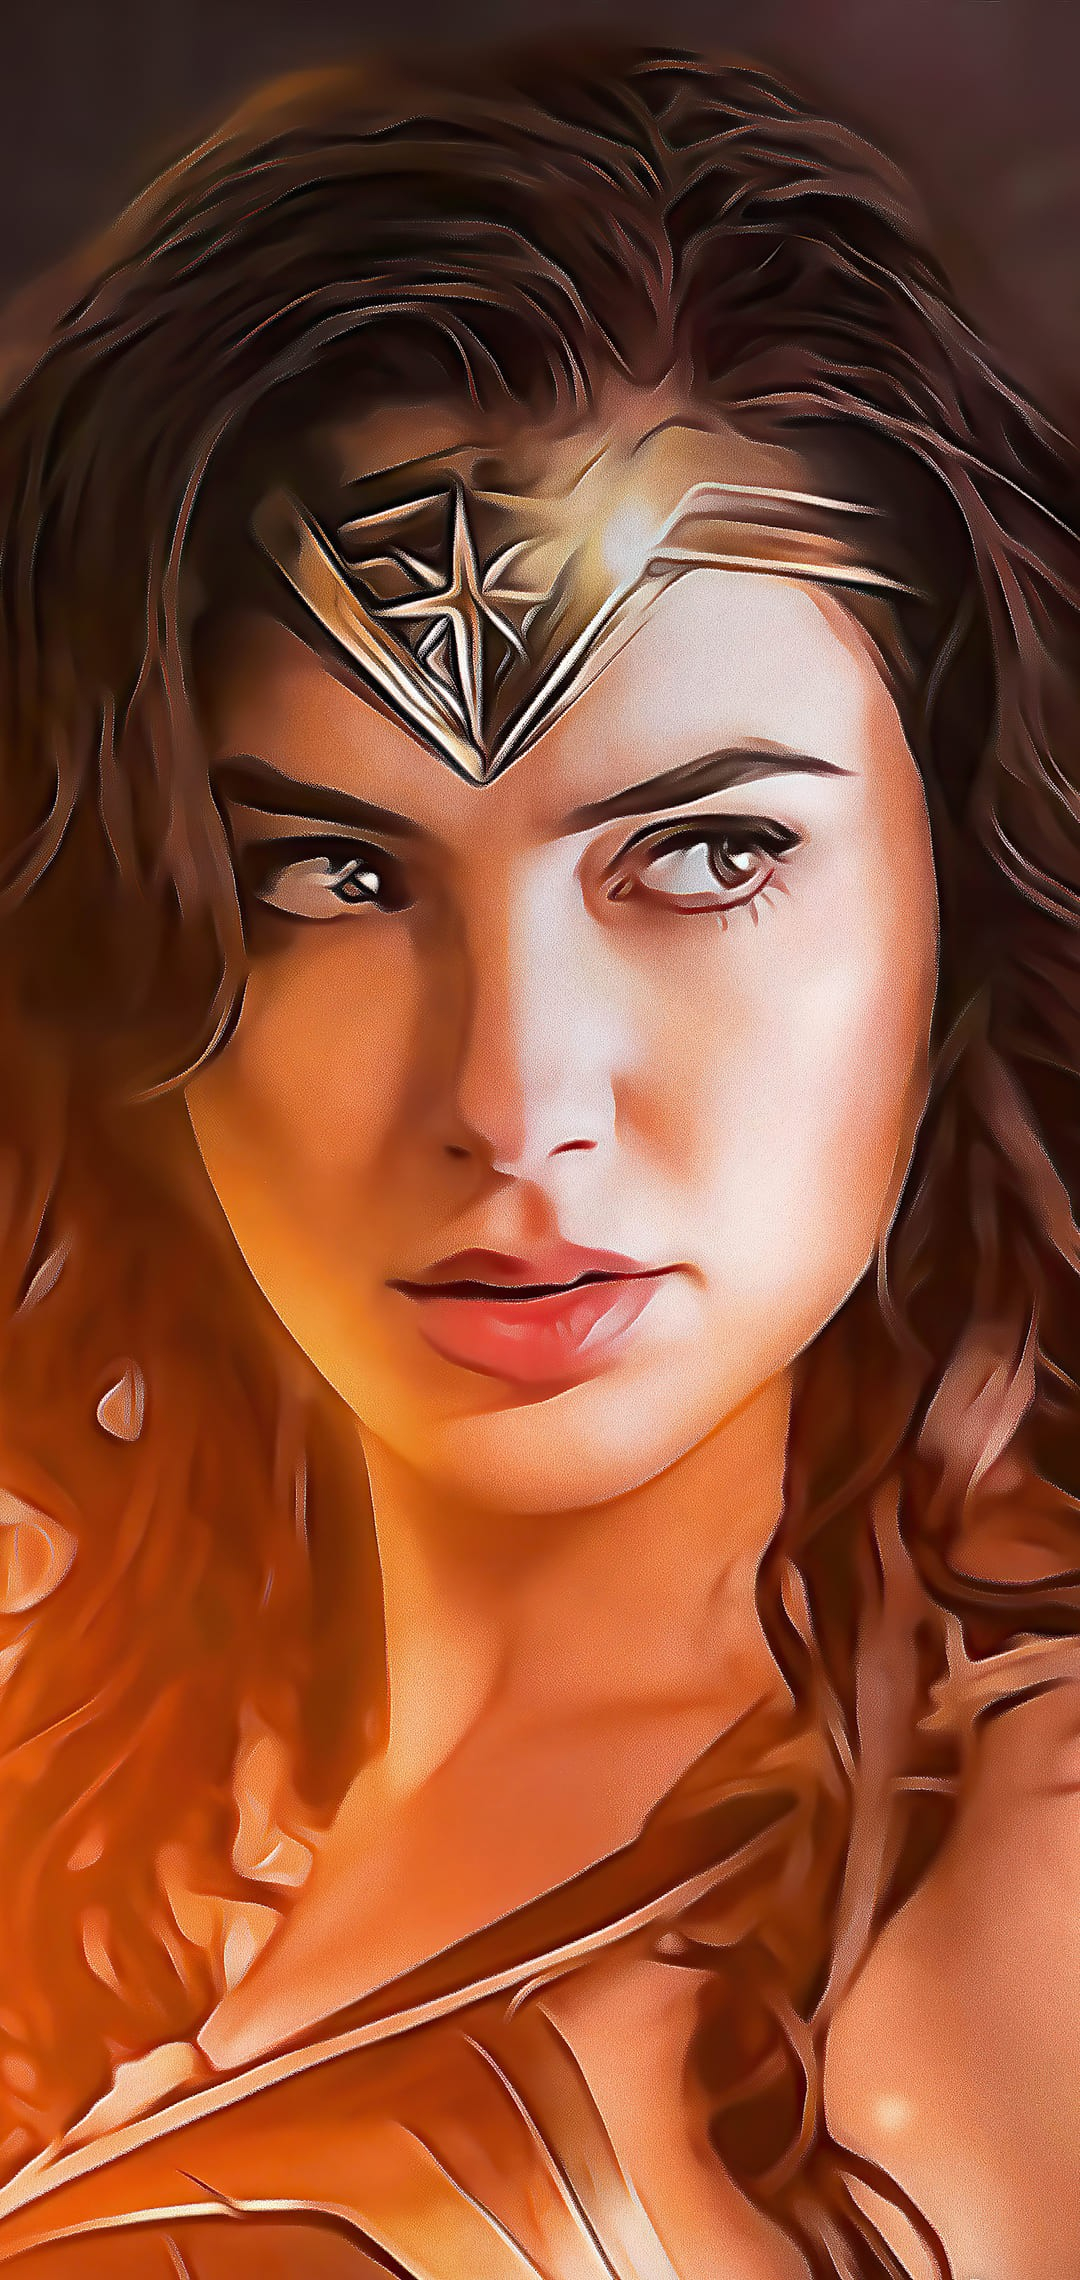 1080x2280 Wonder Woman Wallpaper